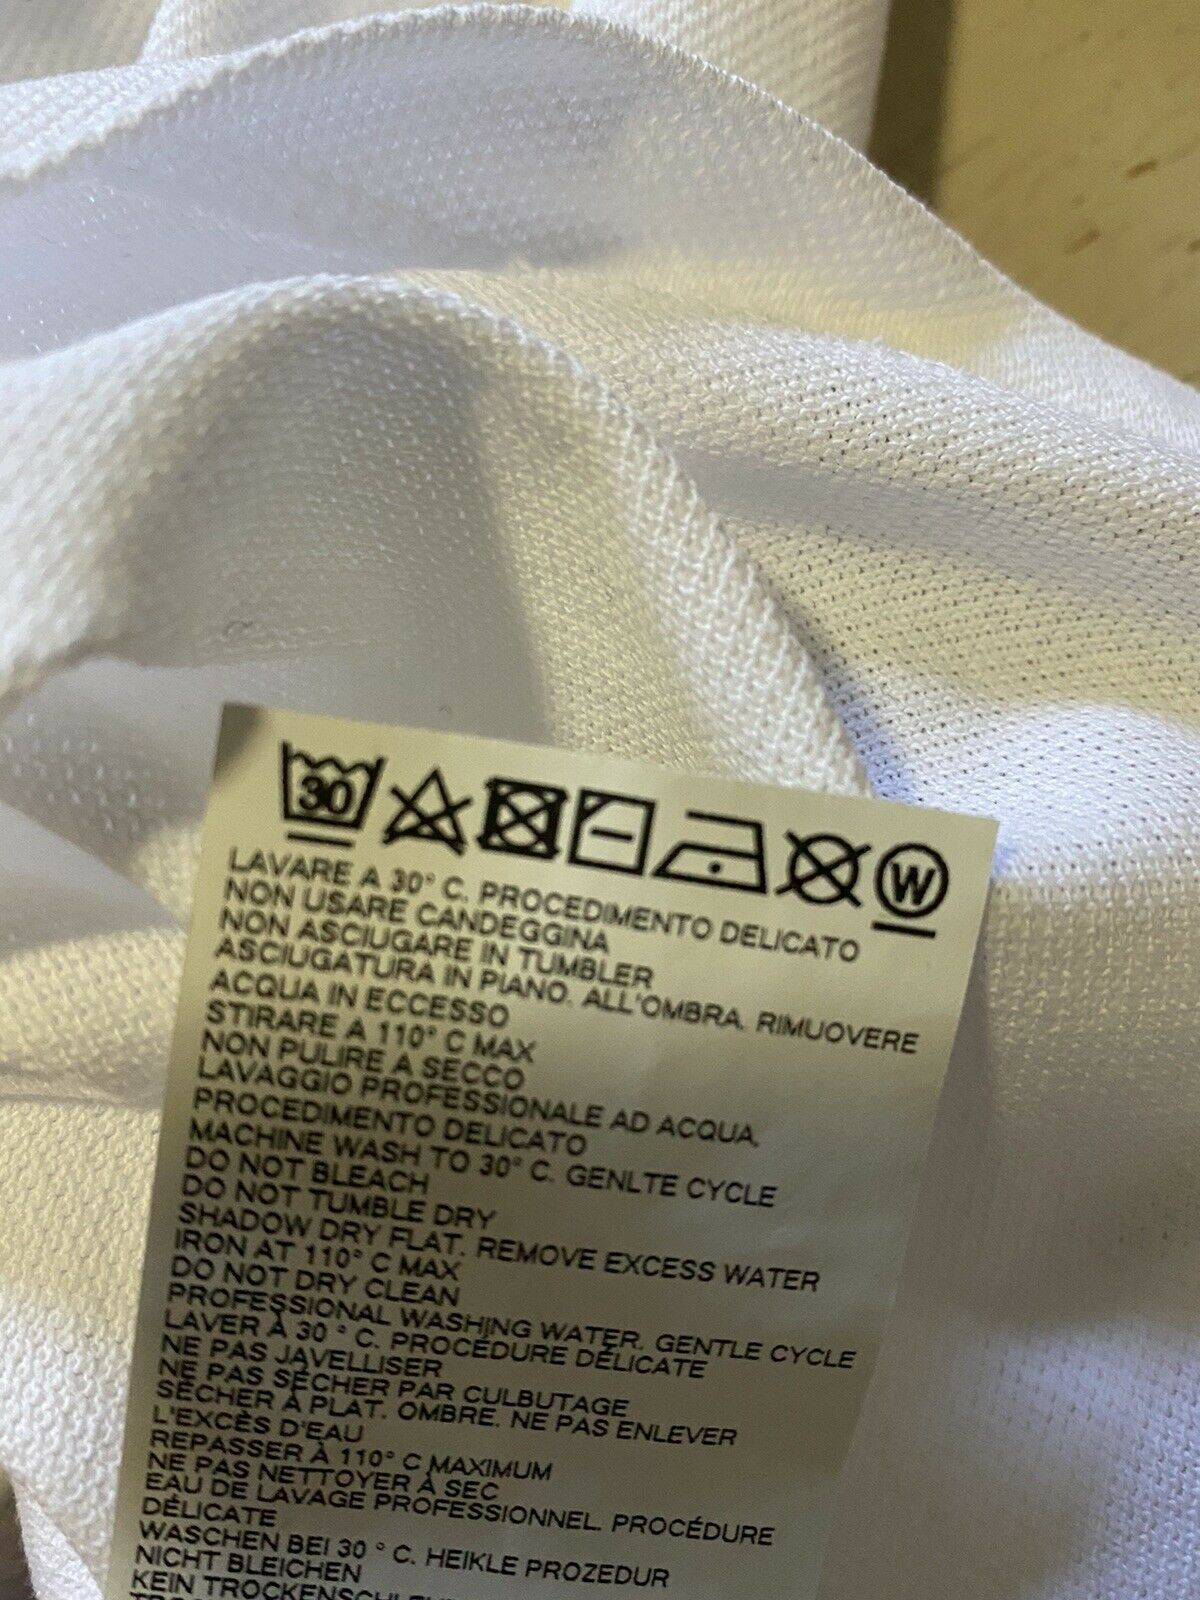 NWT $375 Dsquared2 Men’s Polo Shirt White XS Italy